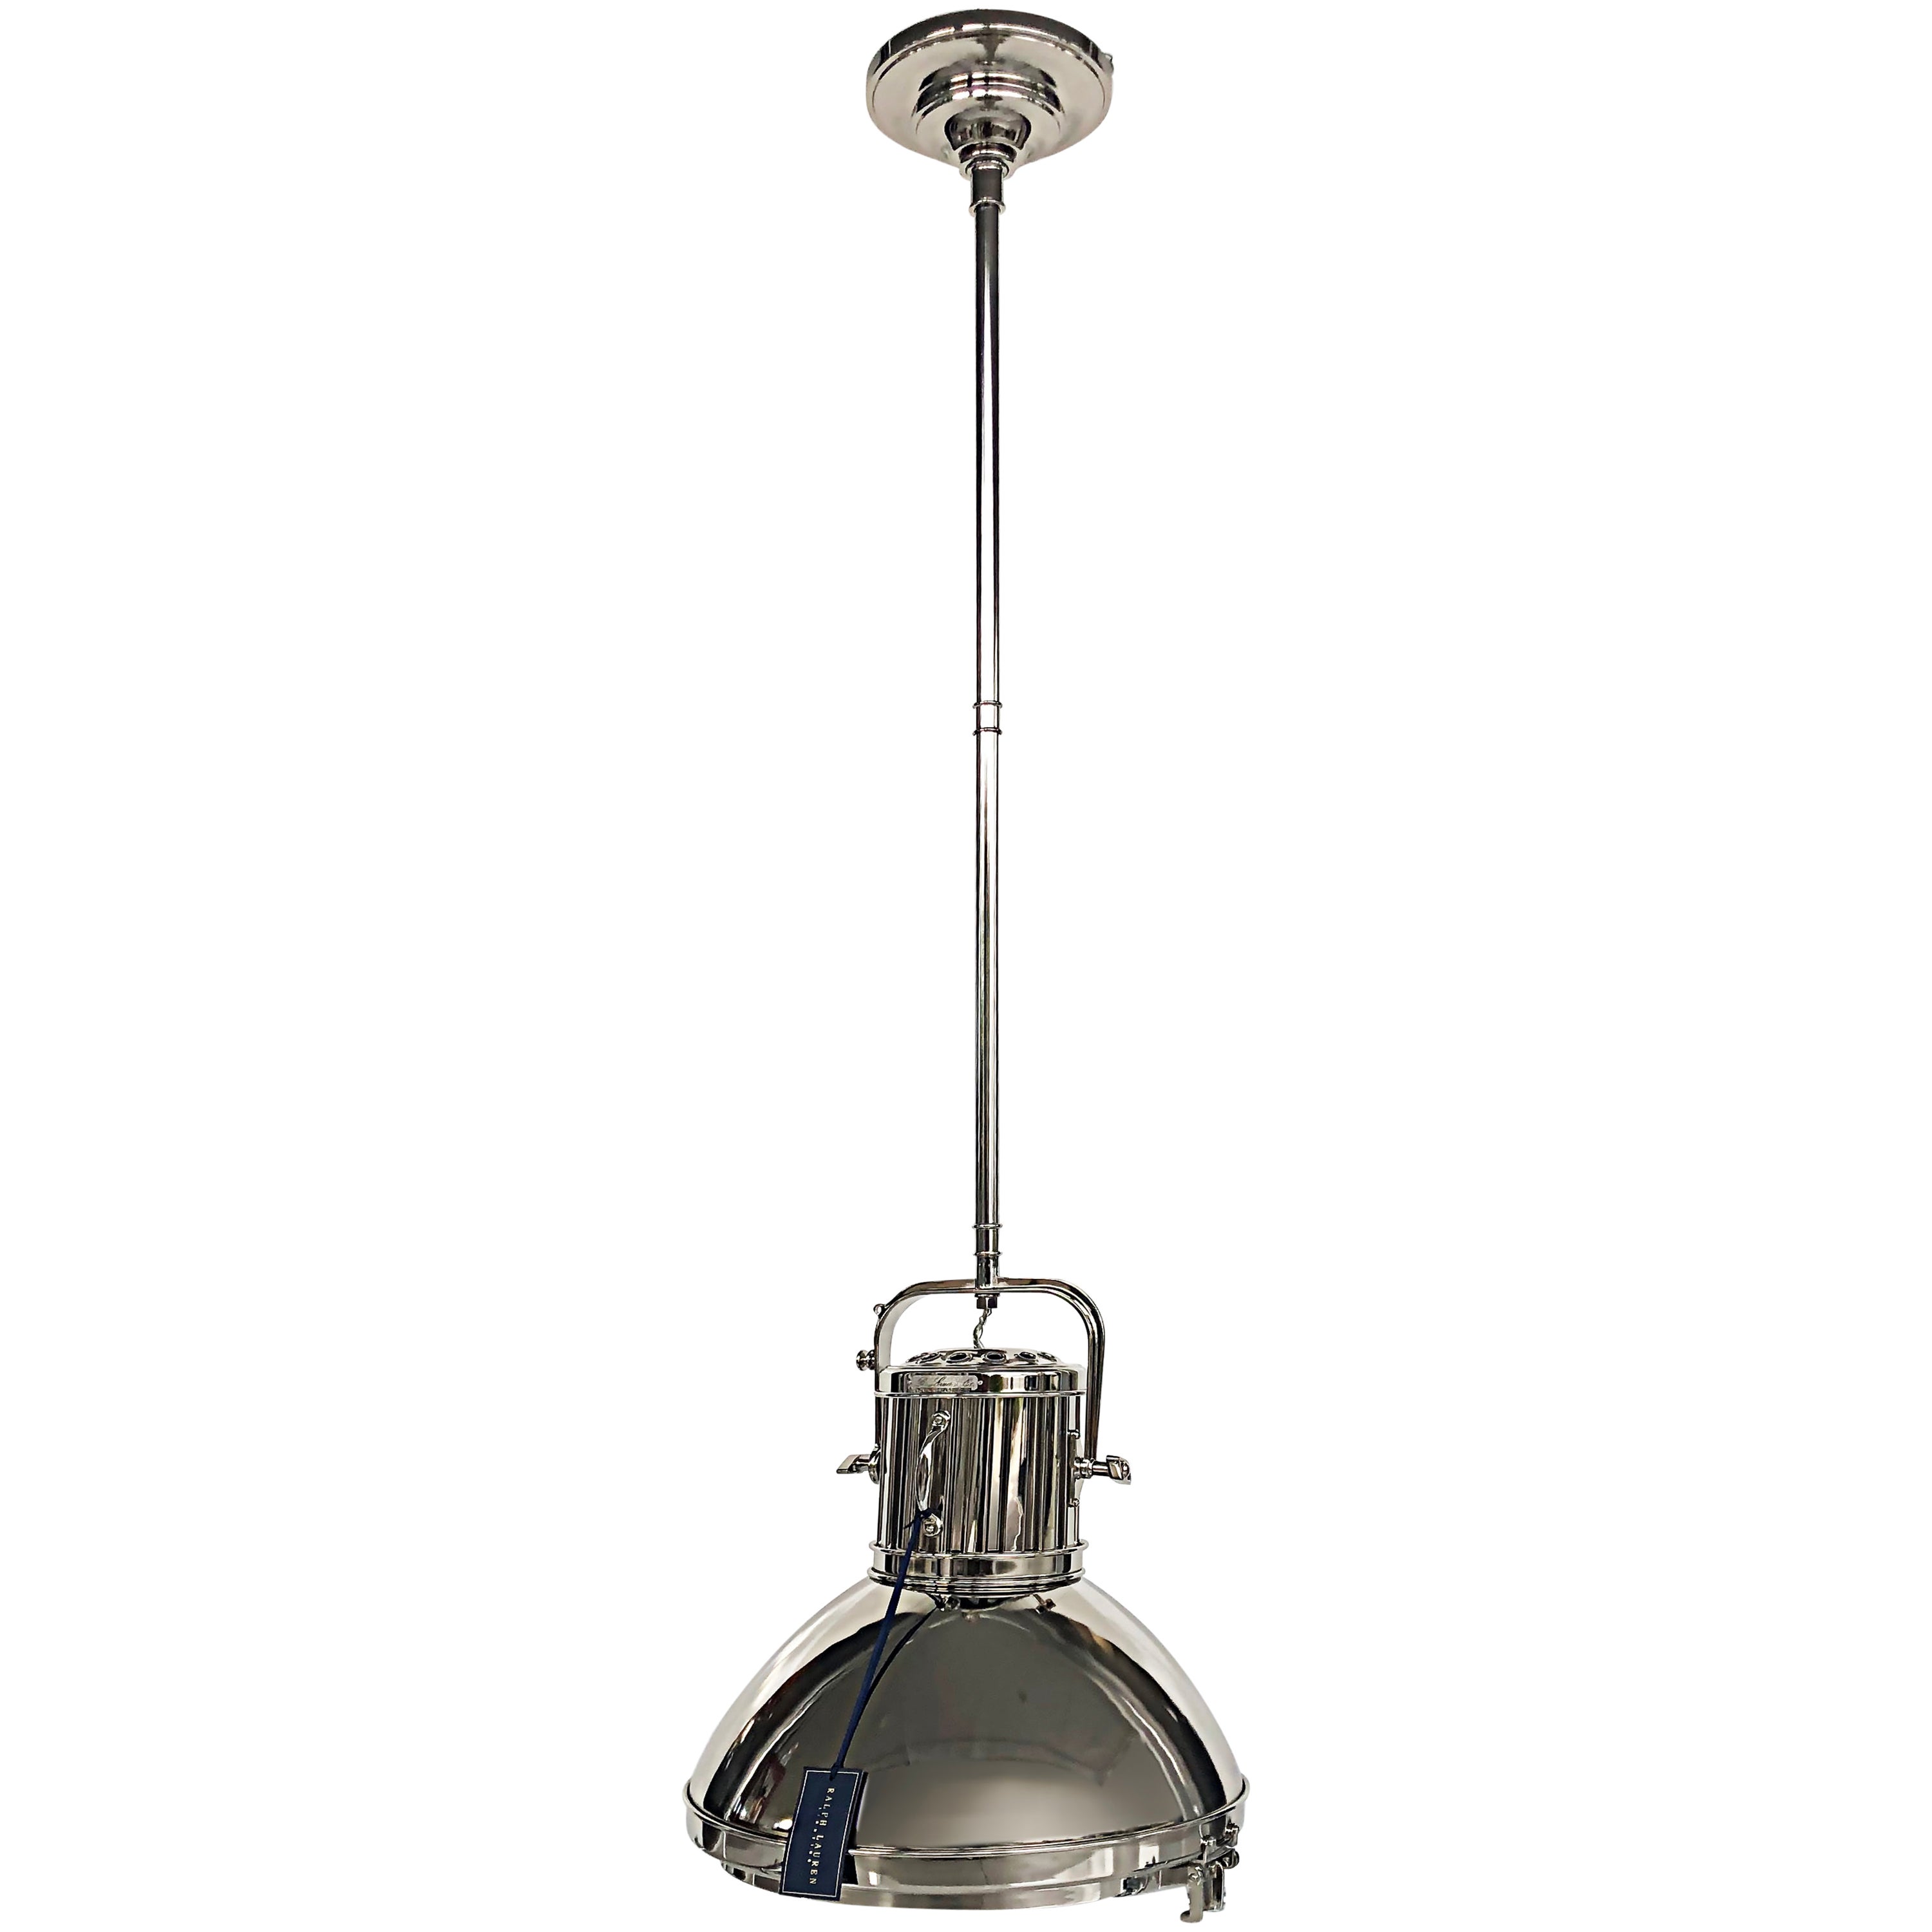 New Ralph Lauren Nickel Montauk Pendant Light Fixture with Canopy For Sale